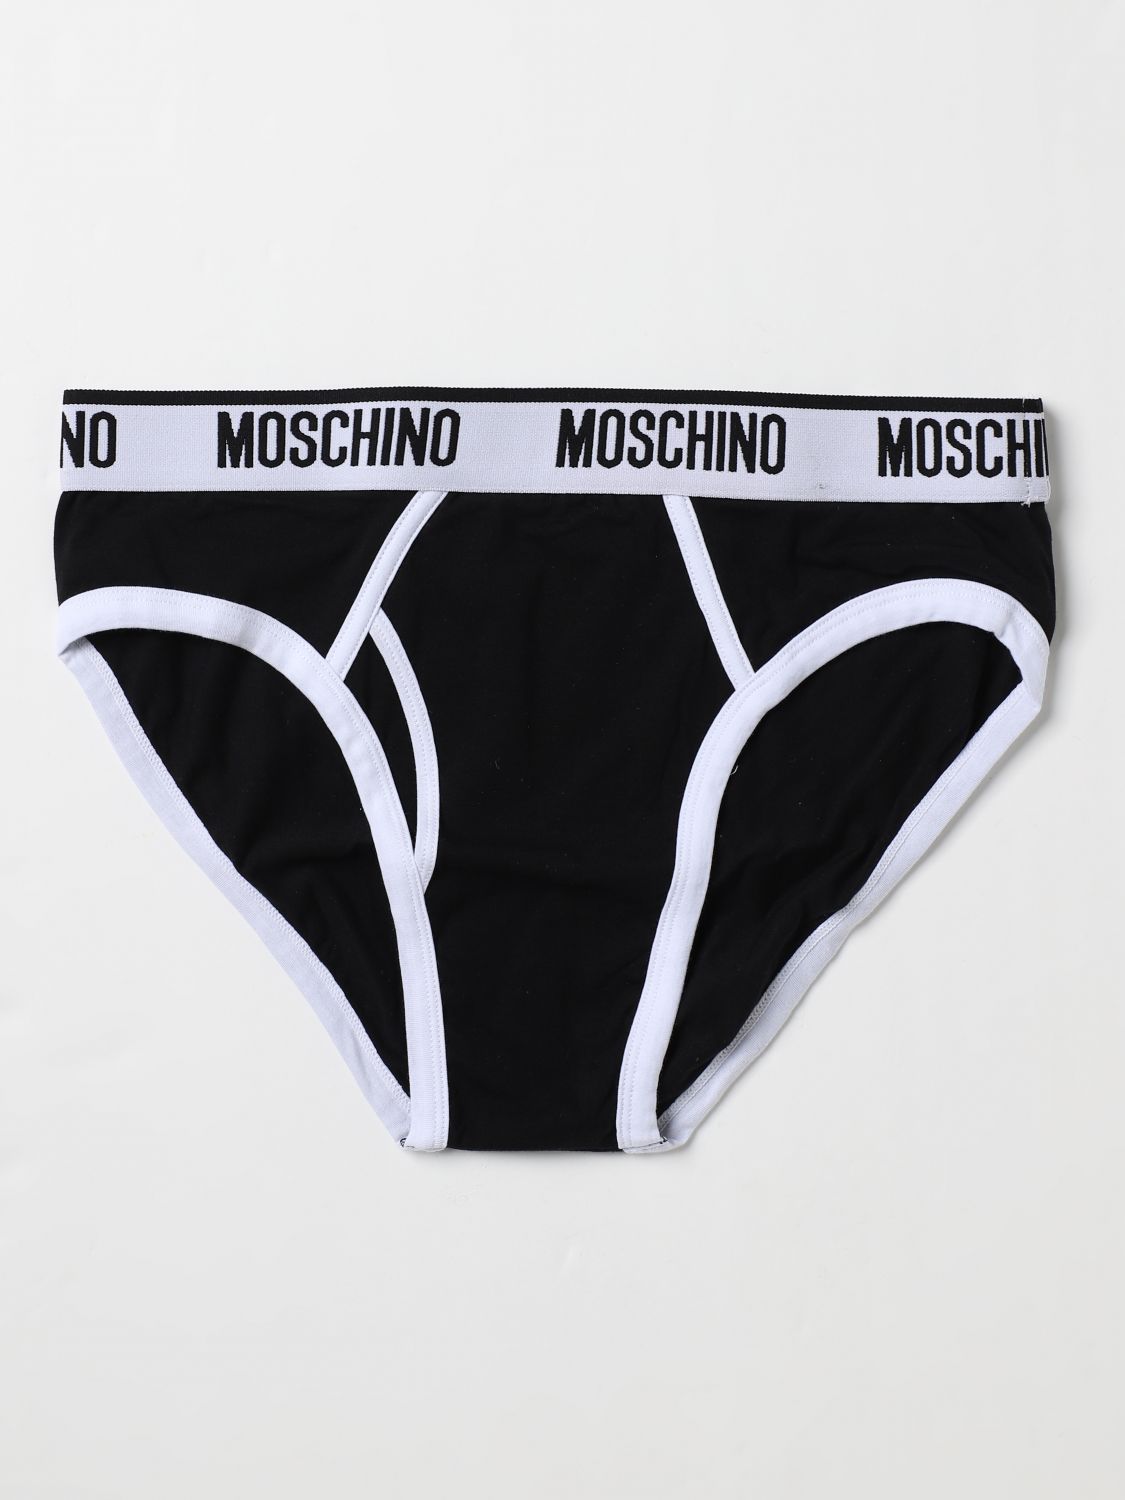 Moschino Underwear Underwear  Men In Black